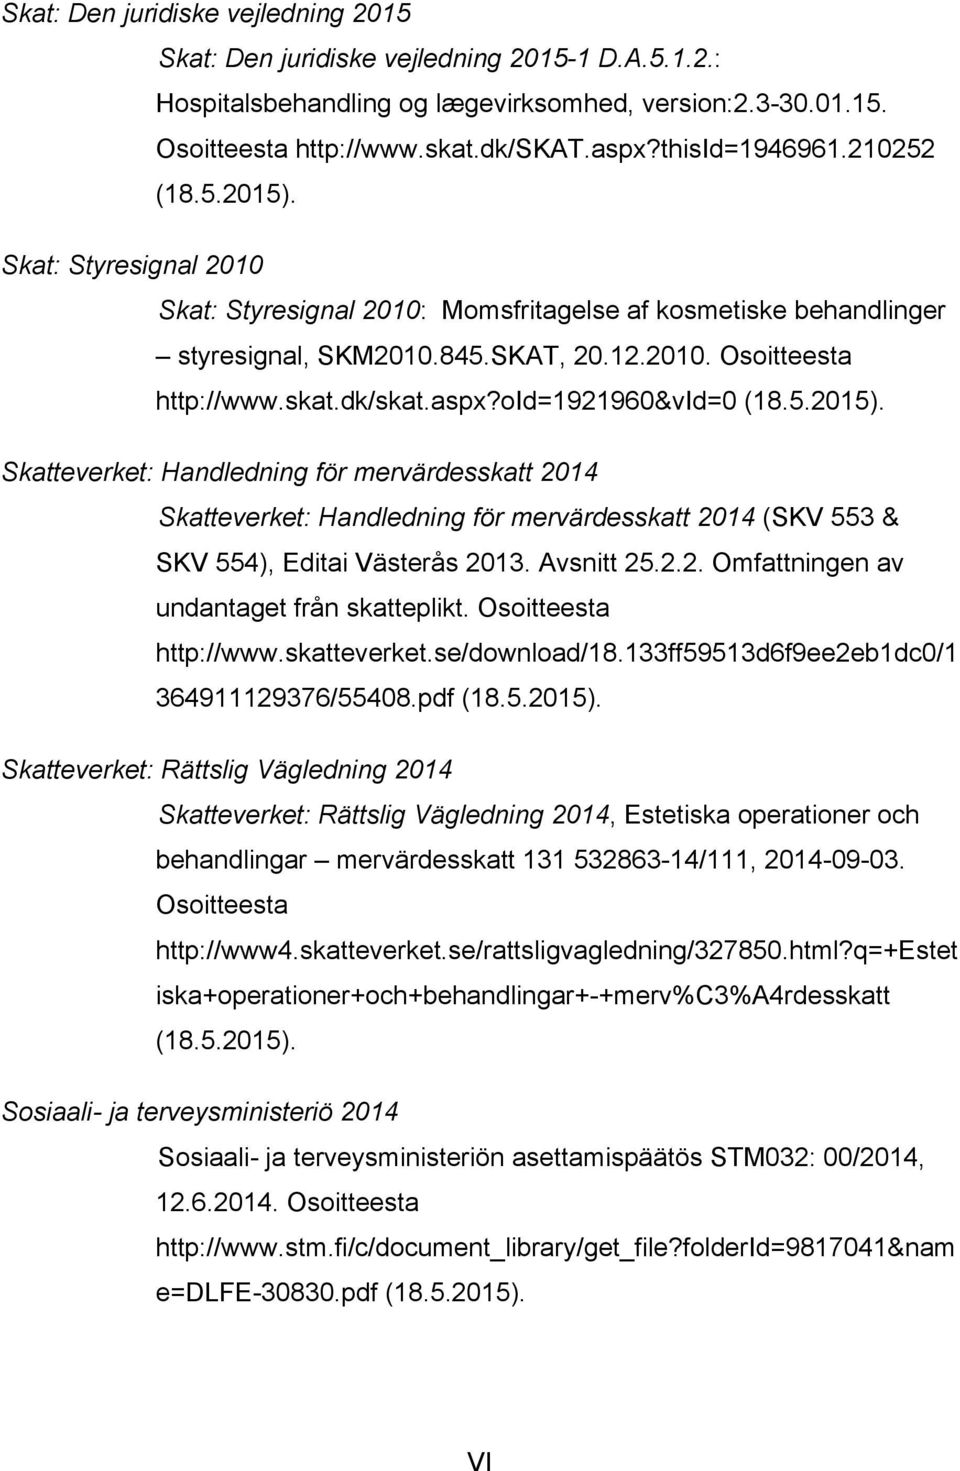 dk/skat.aspx?oid=1921960&vid=0 (18.5.2015). Skatteverket: Handledning för mervärdesskatt 2014 Skatteverket: Handledning för mervärdesskatt 2014 (SKV 553 & SKV 554), Editai Västerås 2013. Avsnitt 25.2.2. Omfattningen av undantaget från skatteplikt.